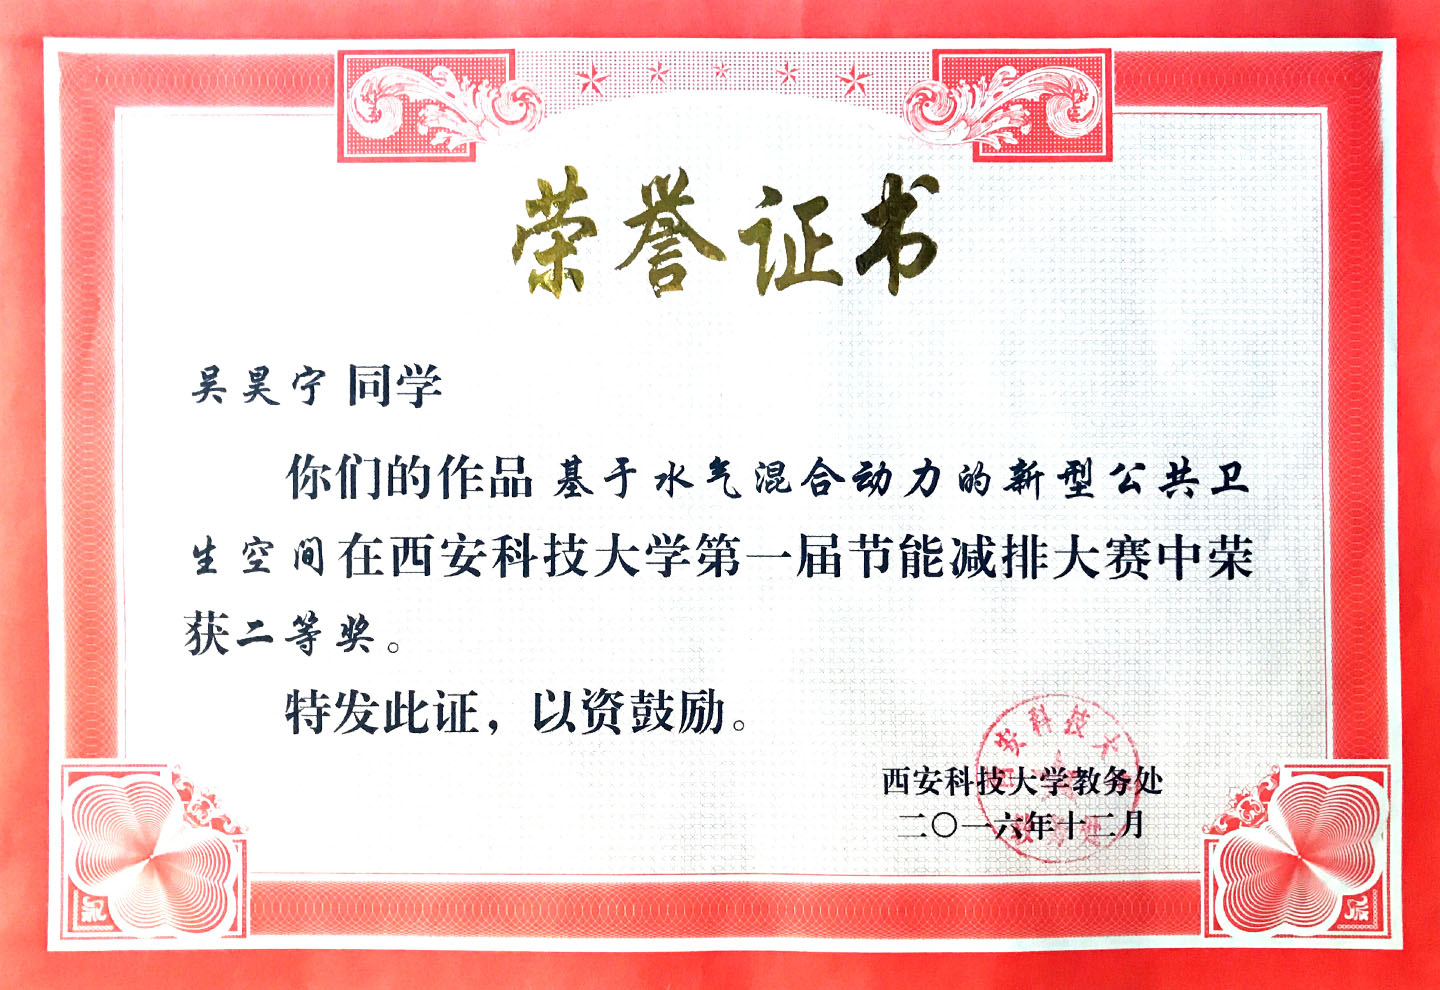 Brief Certificate